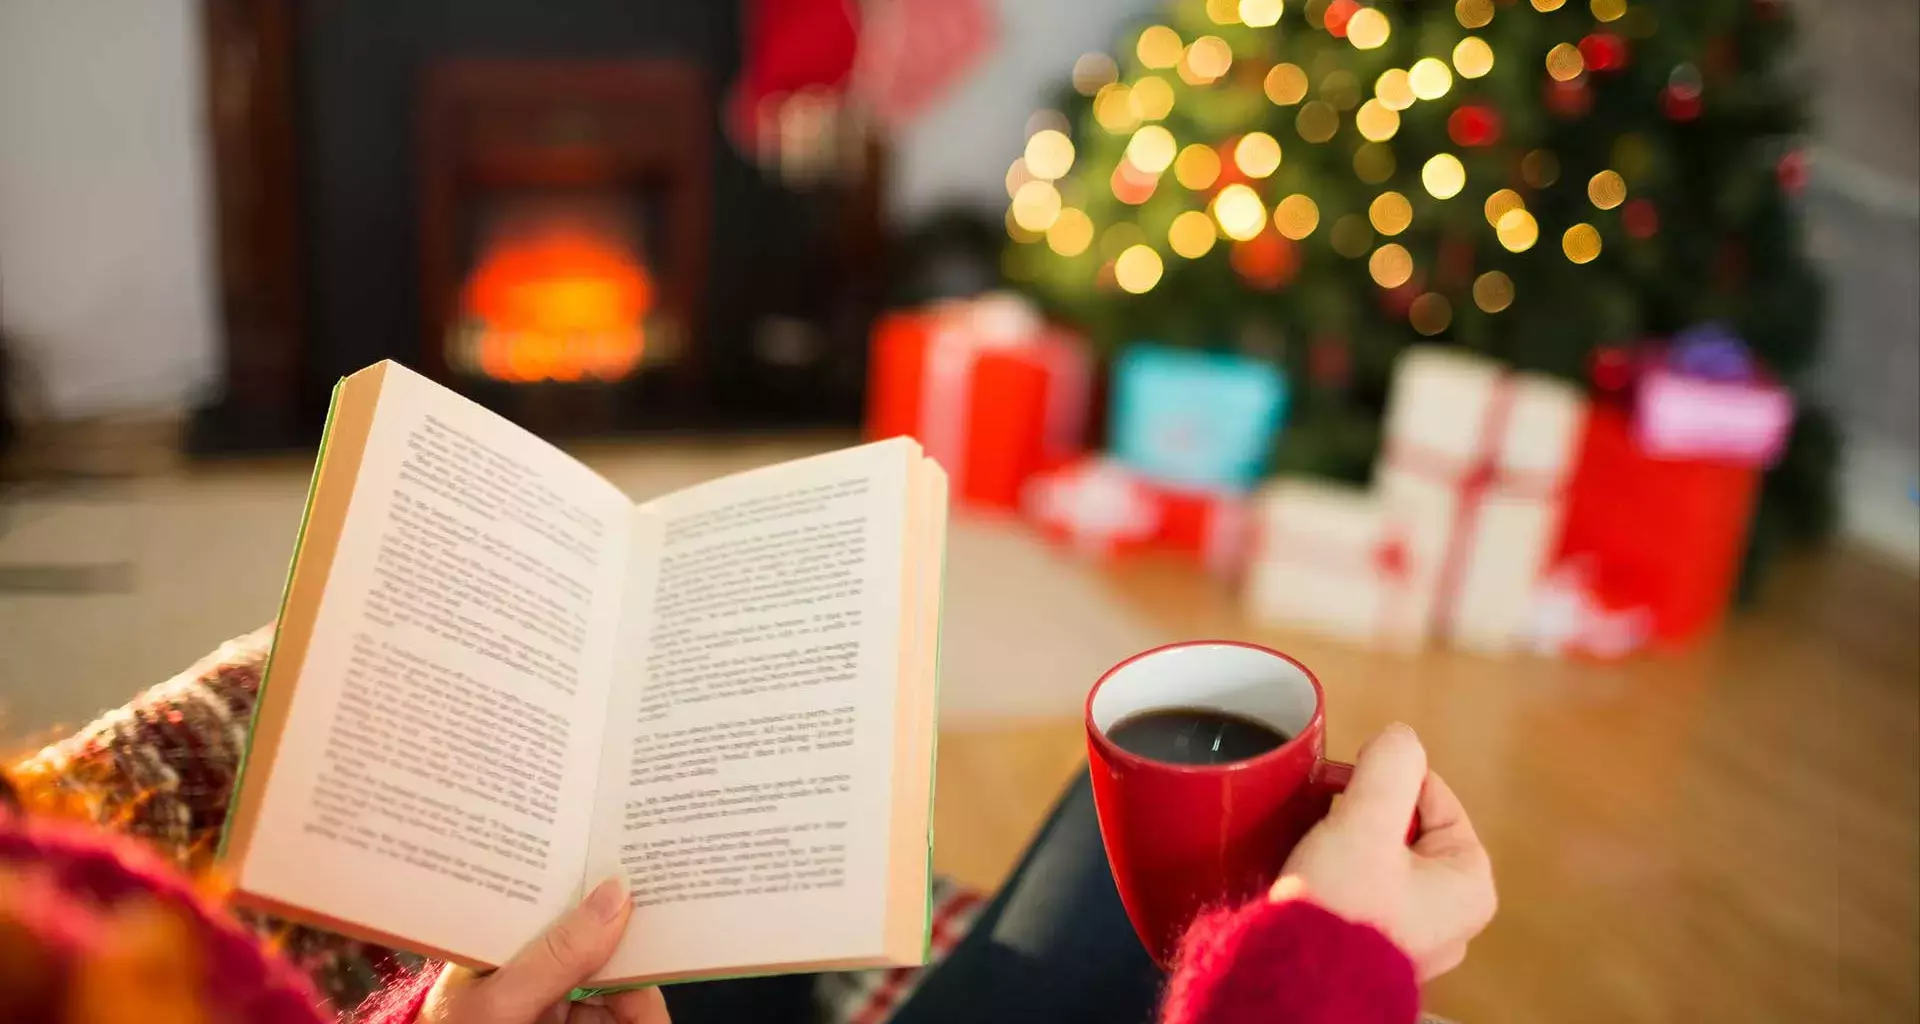 Mano de una mujer joven, sosteniendo un libro, y se observa al fondo el pino de navidad encendido